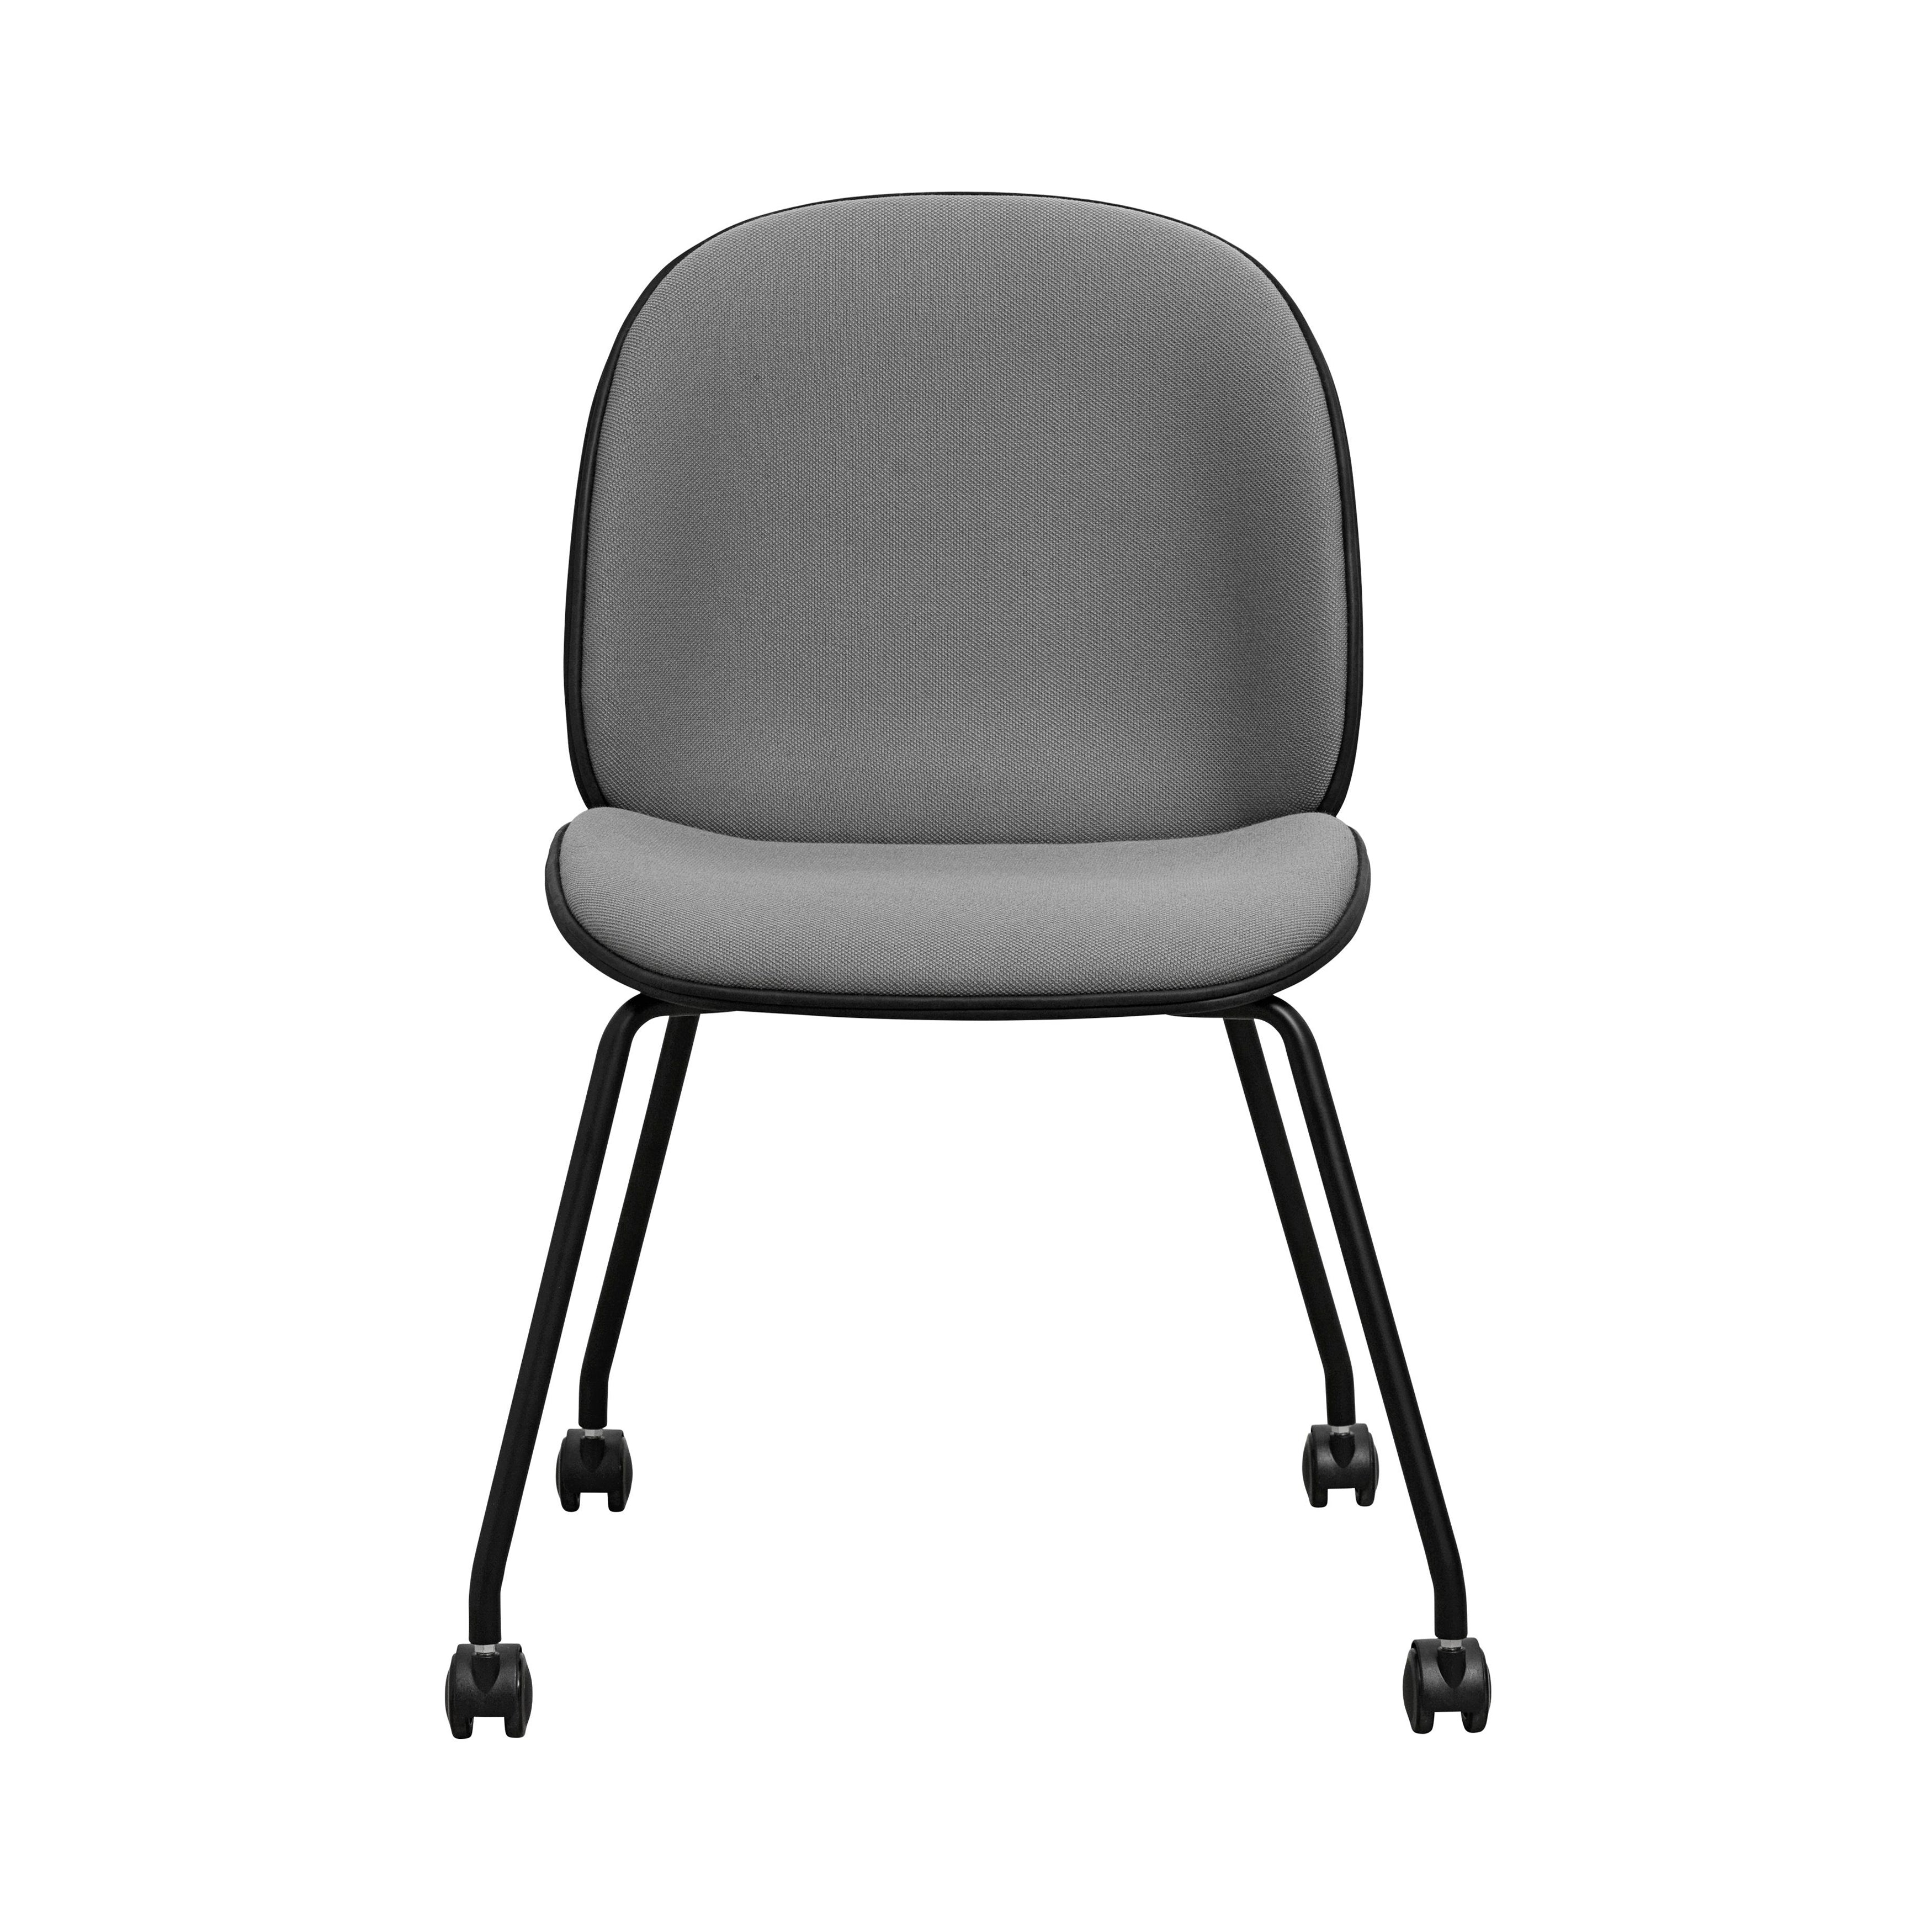 Beetle Meeting Chair: 4 Leg Castor Base + Full Upholstery